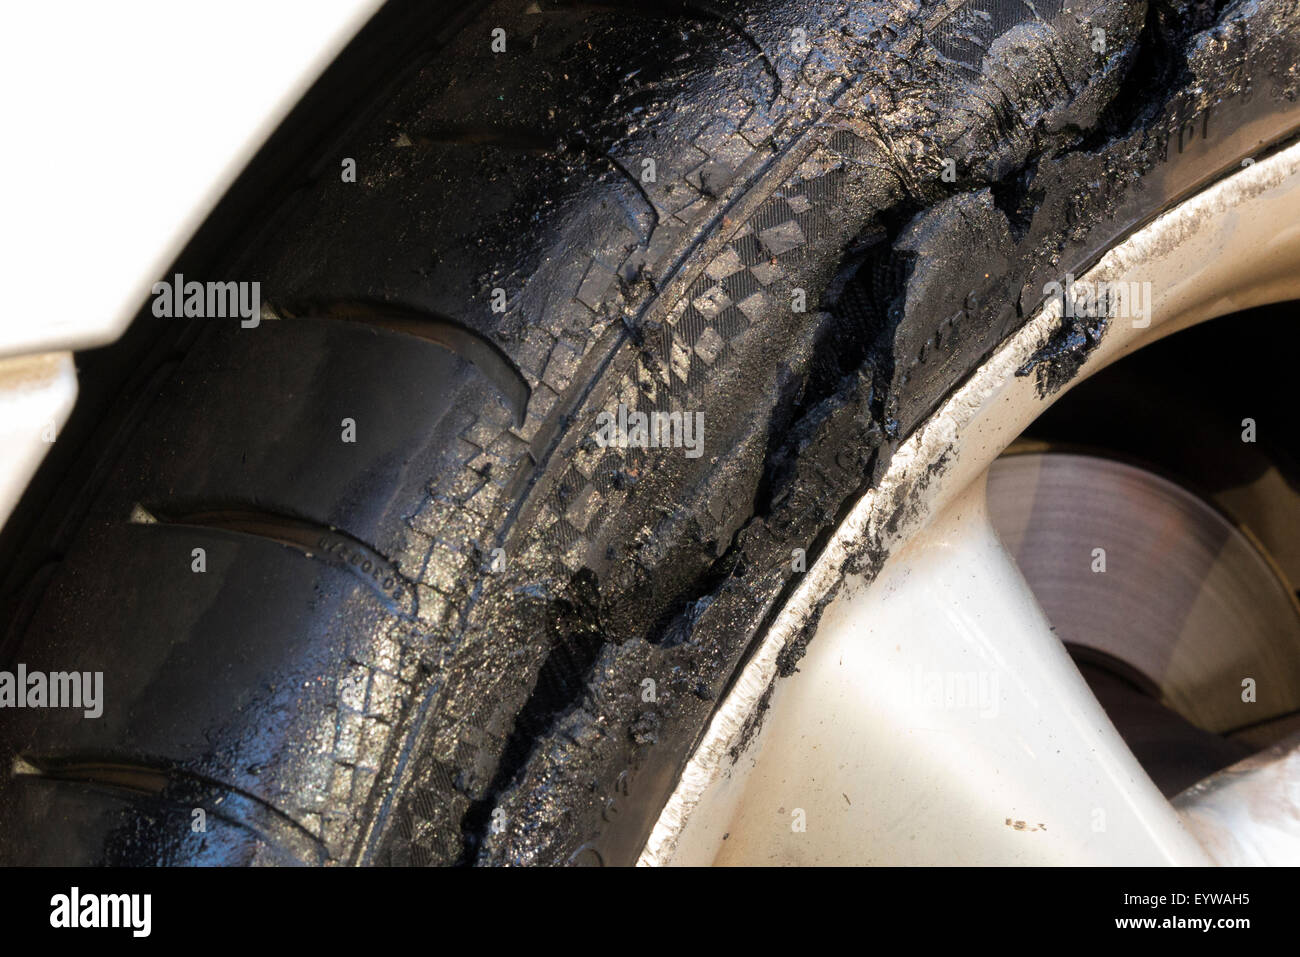 Durchstoß-/Reifenpanne car Reifen/Reifen, fortgesetzt wurde, bis zu dem  Punkt, der Zerstörung und der Schmelzenden getrieben zu werden.  Großbritannien Stockfotografie - Alamy